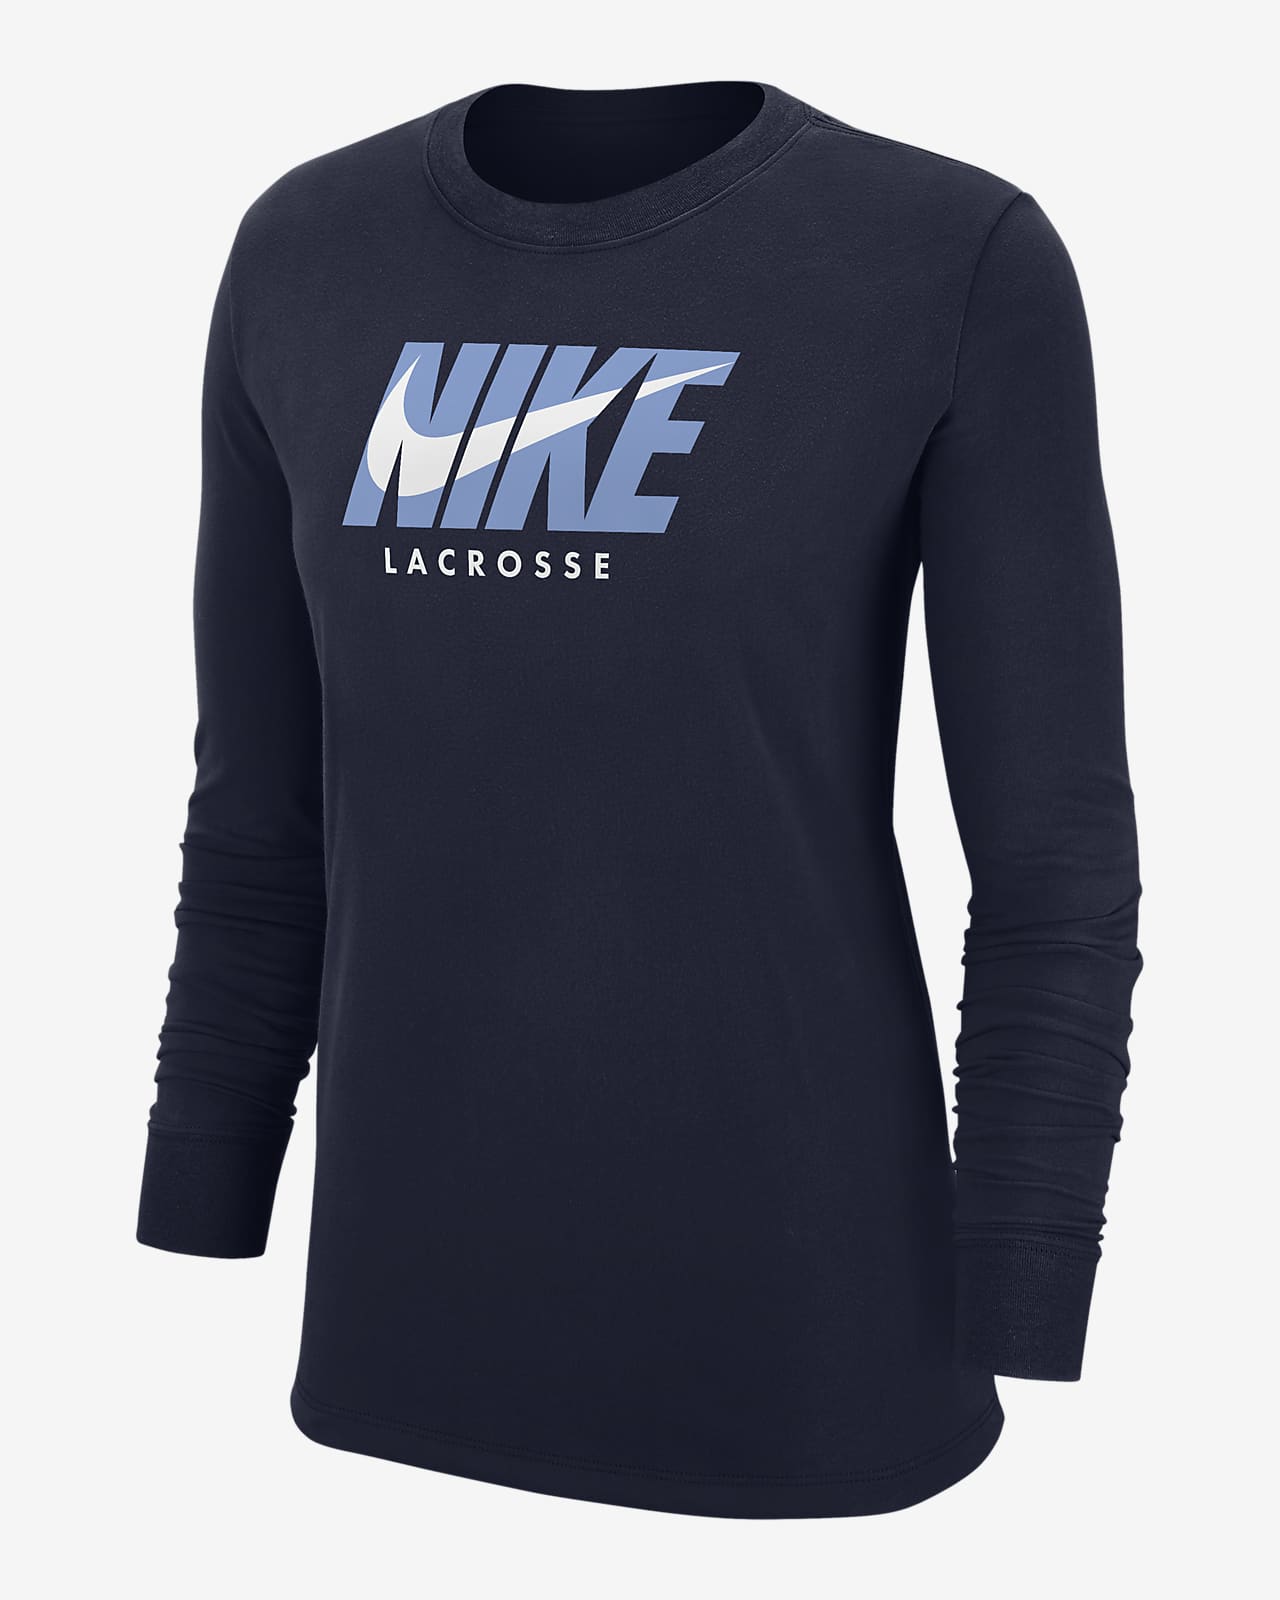 Playera de lacrosse de manga larga para mujer Nike